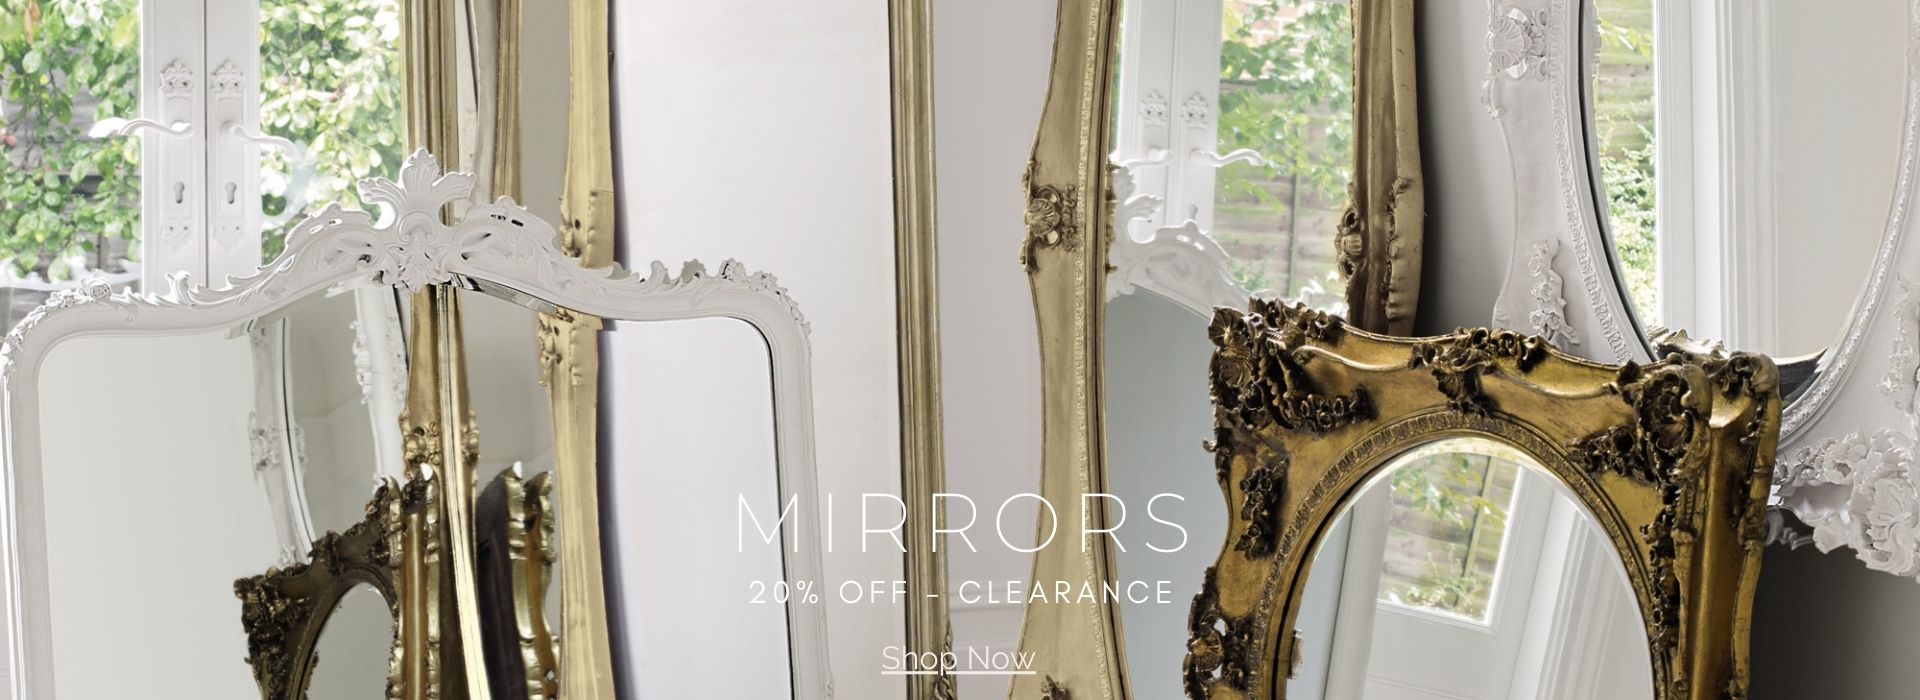 Espejos con molduras de diseño francés con descuento